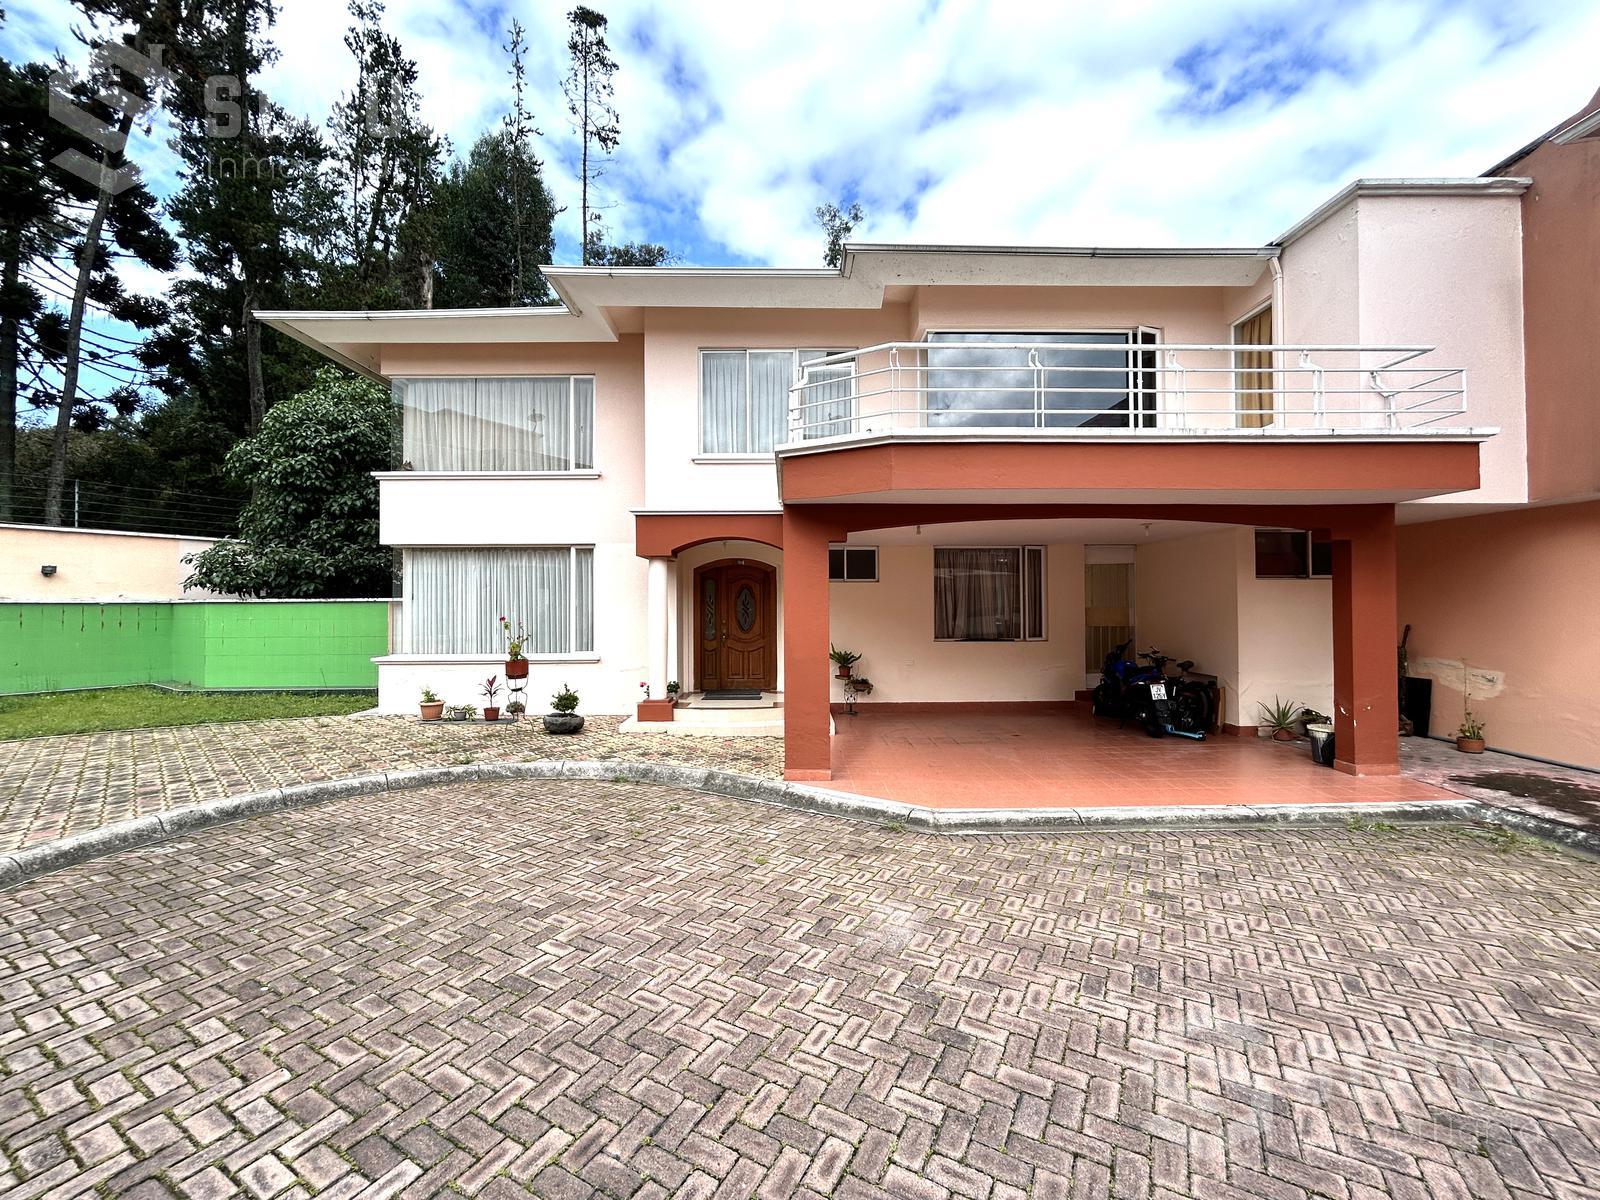 Vendo casa 307 m en Urbanización, 4 Dorm., 2 Garajes, sector Conocoto, $169.900